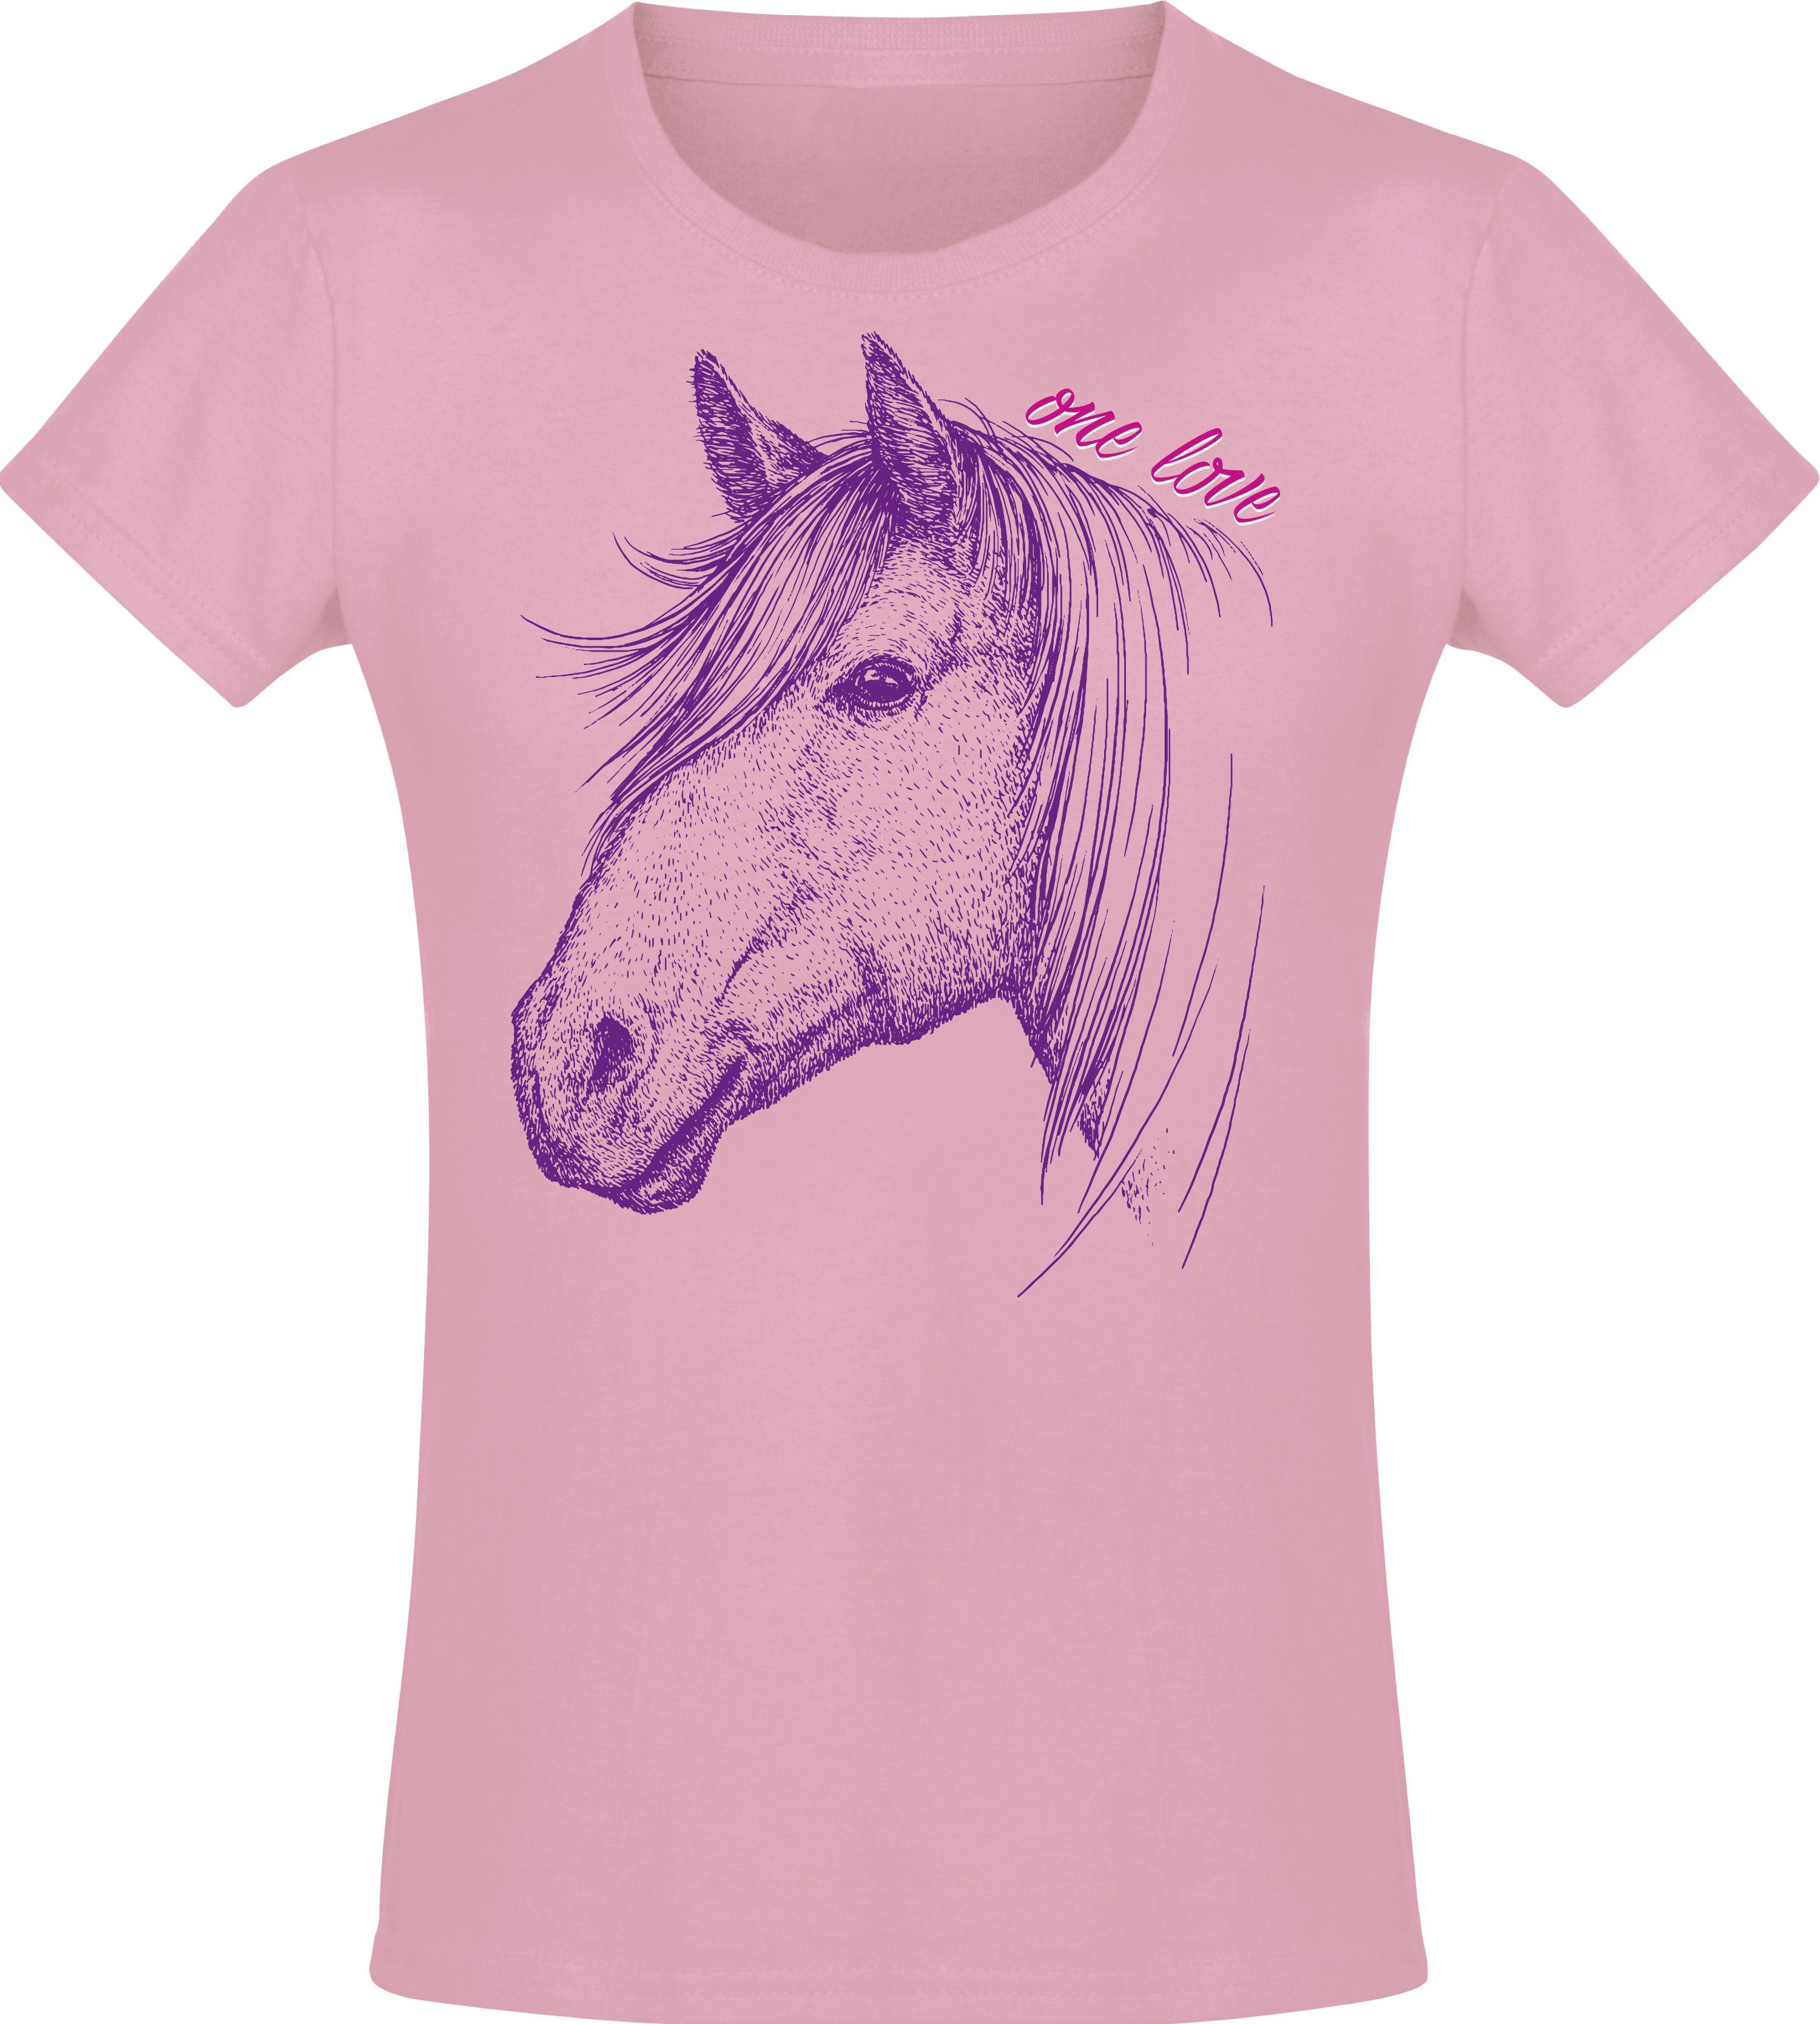 Baddery Print-Shirt One Love - Geburtstag aus Geschenk T-Shirt Baumwolle hochwertiger Reiten, Pferde Siebdruck, Mädchen 